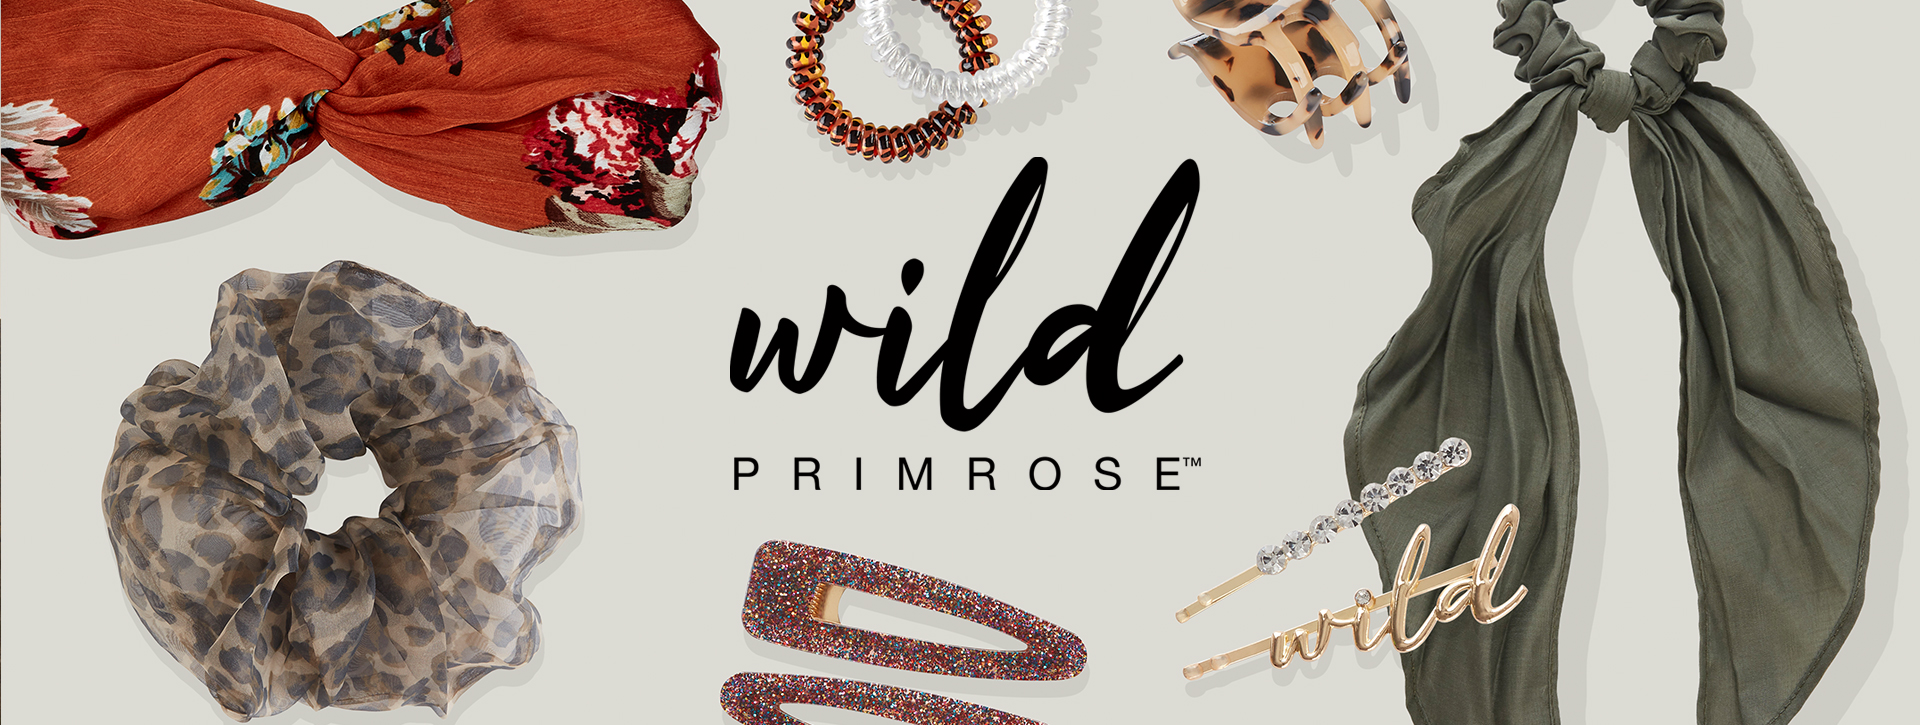 Wild-Primrose2